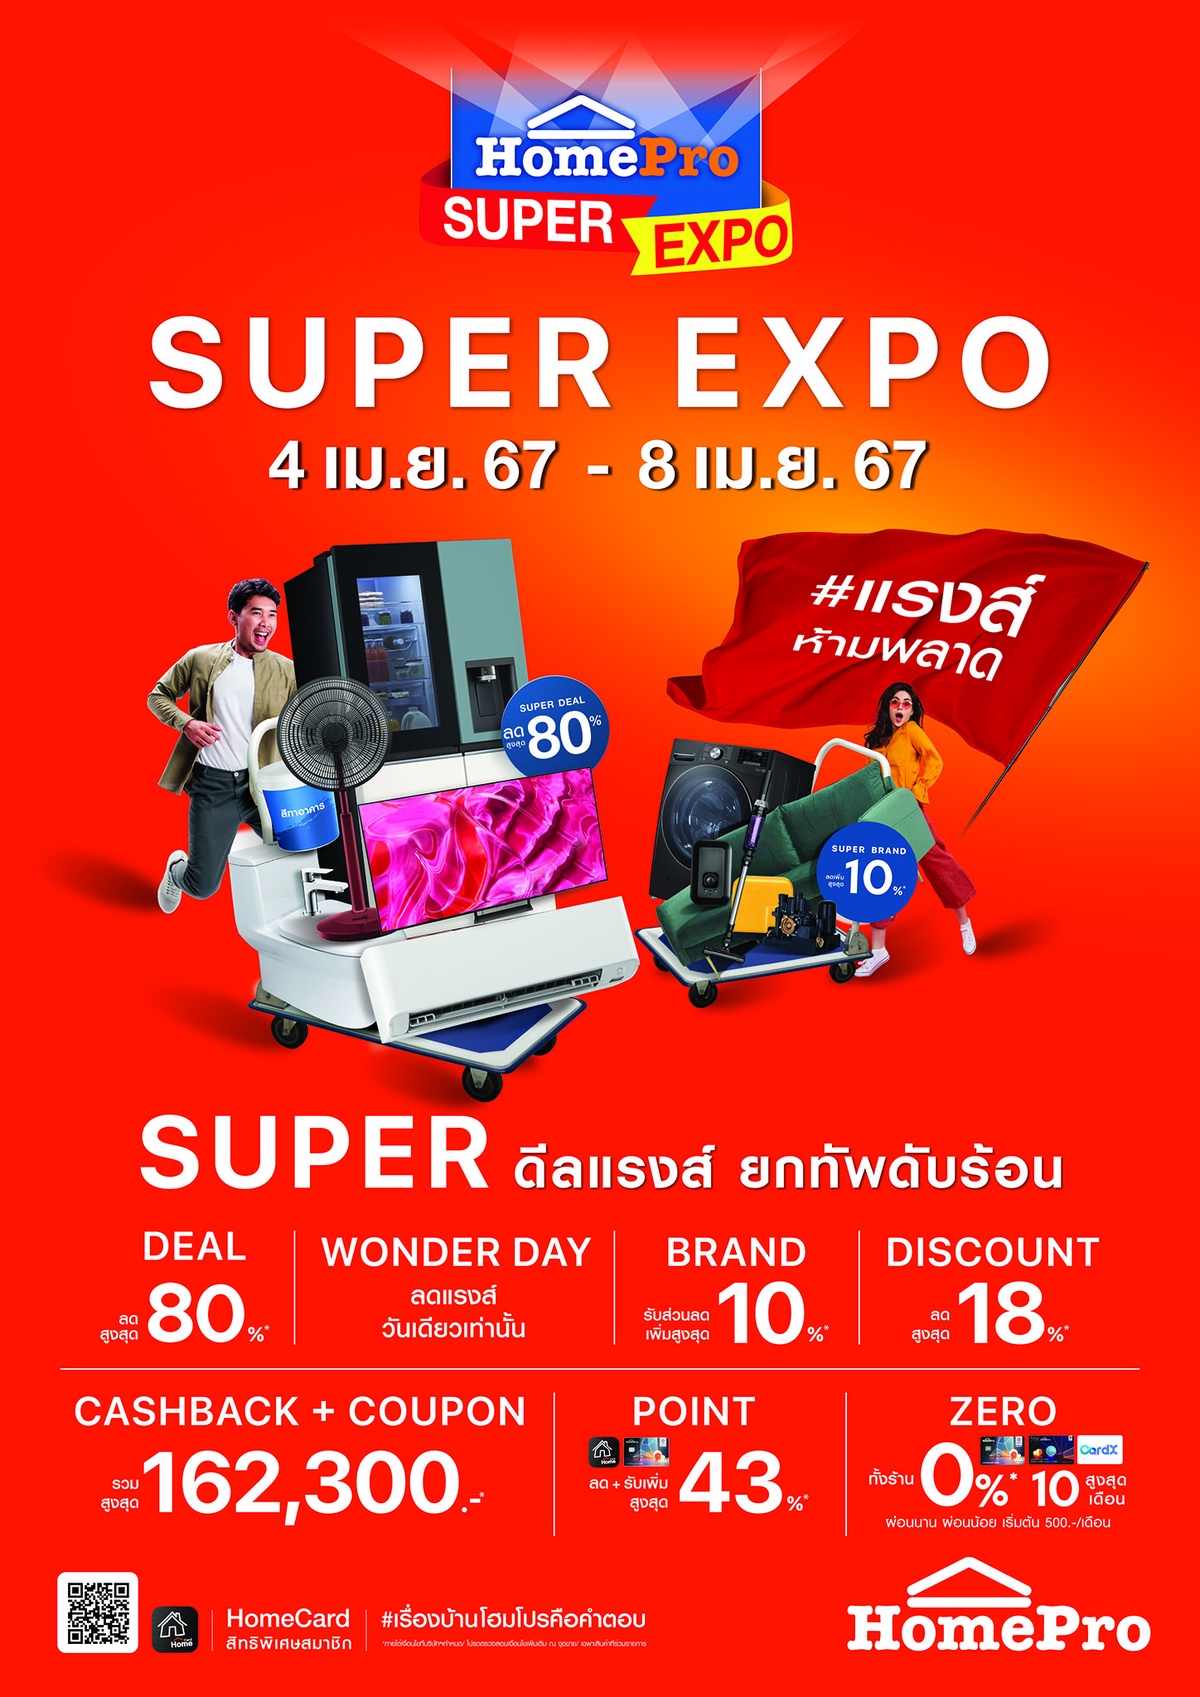 ยกทัพดับร้อน กับ HomePro SUPER EXPO #แรงส์ห้ามพลาด Super ดีลแรงส์ สินค้าเรื่องบ้านลดสูงสุด 80% คืนกำไรจัดเต็ม 162,300 บาท! 4 - 8 เม.ย. 67 นี้